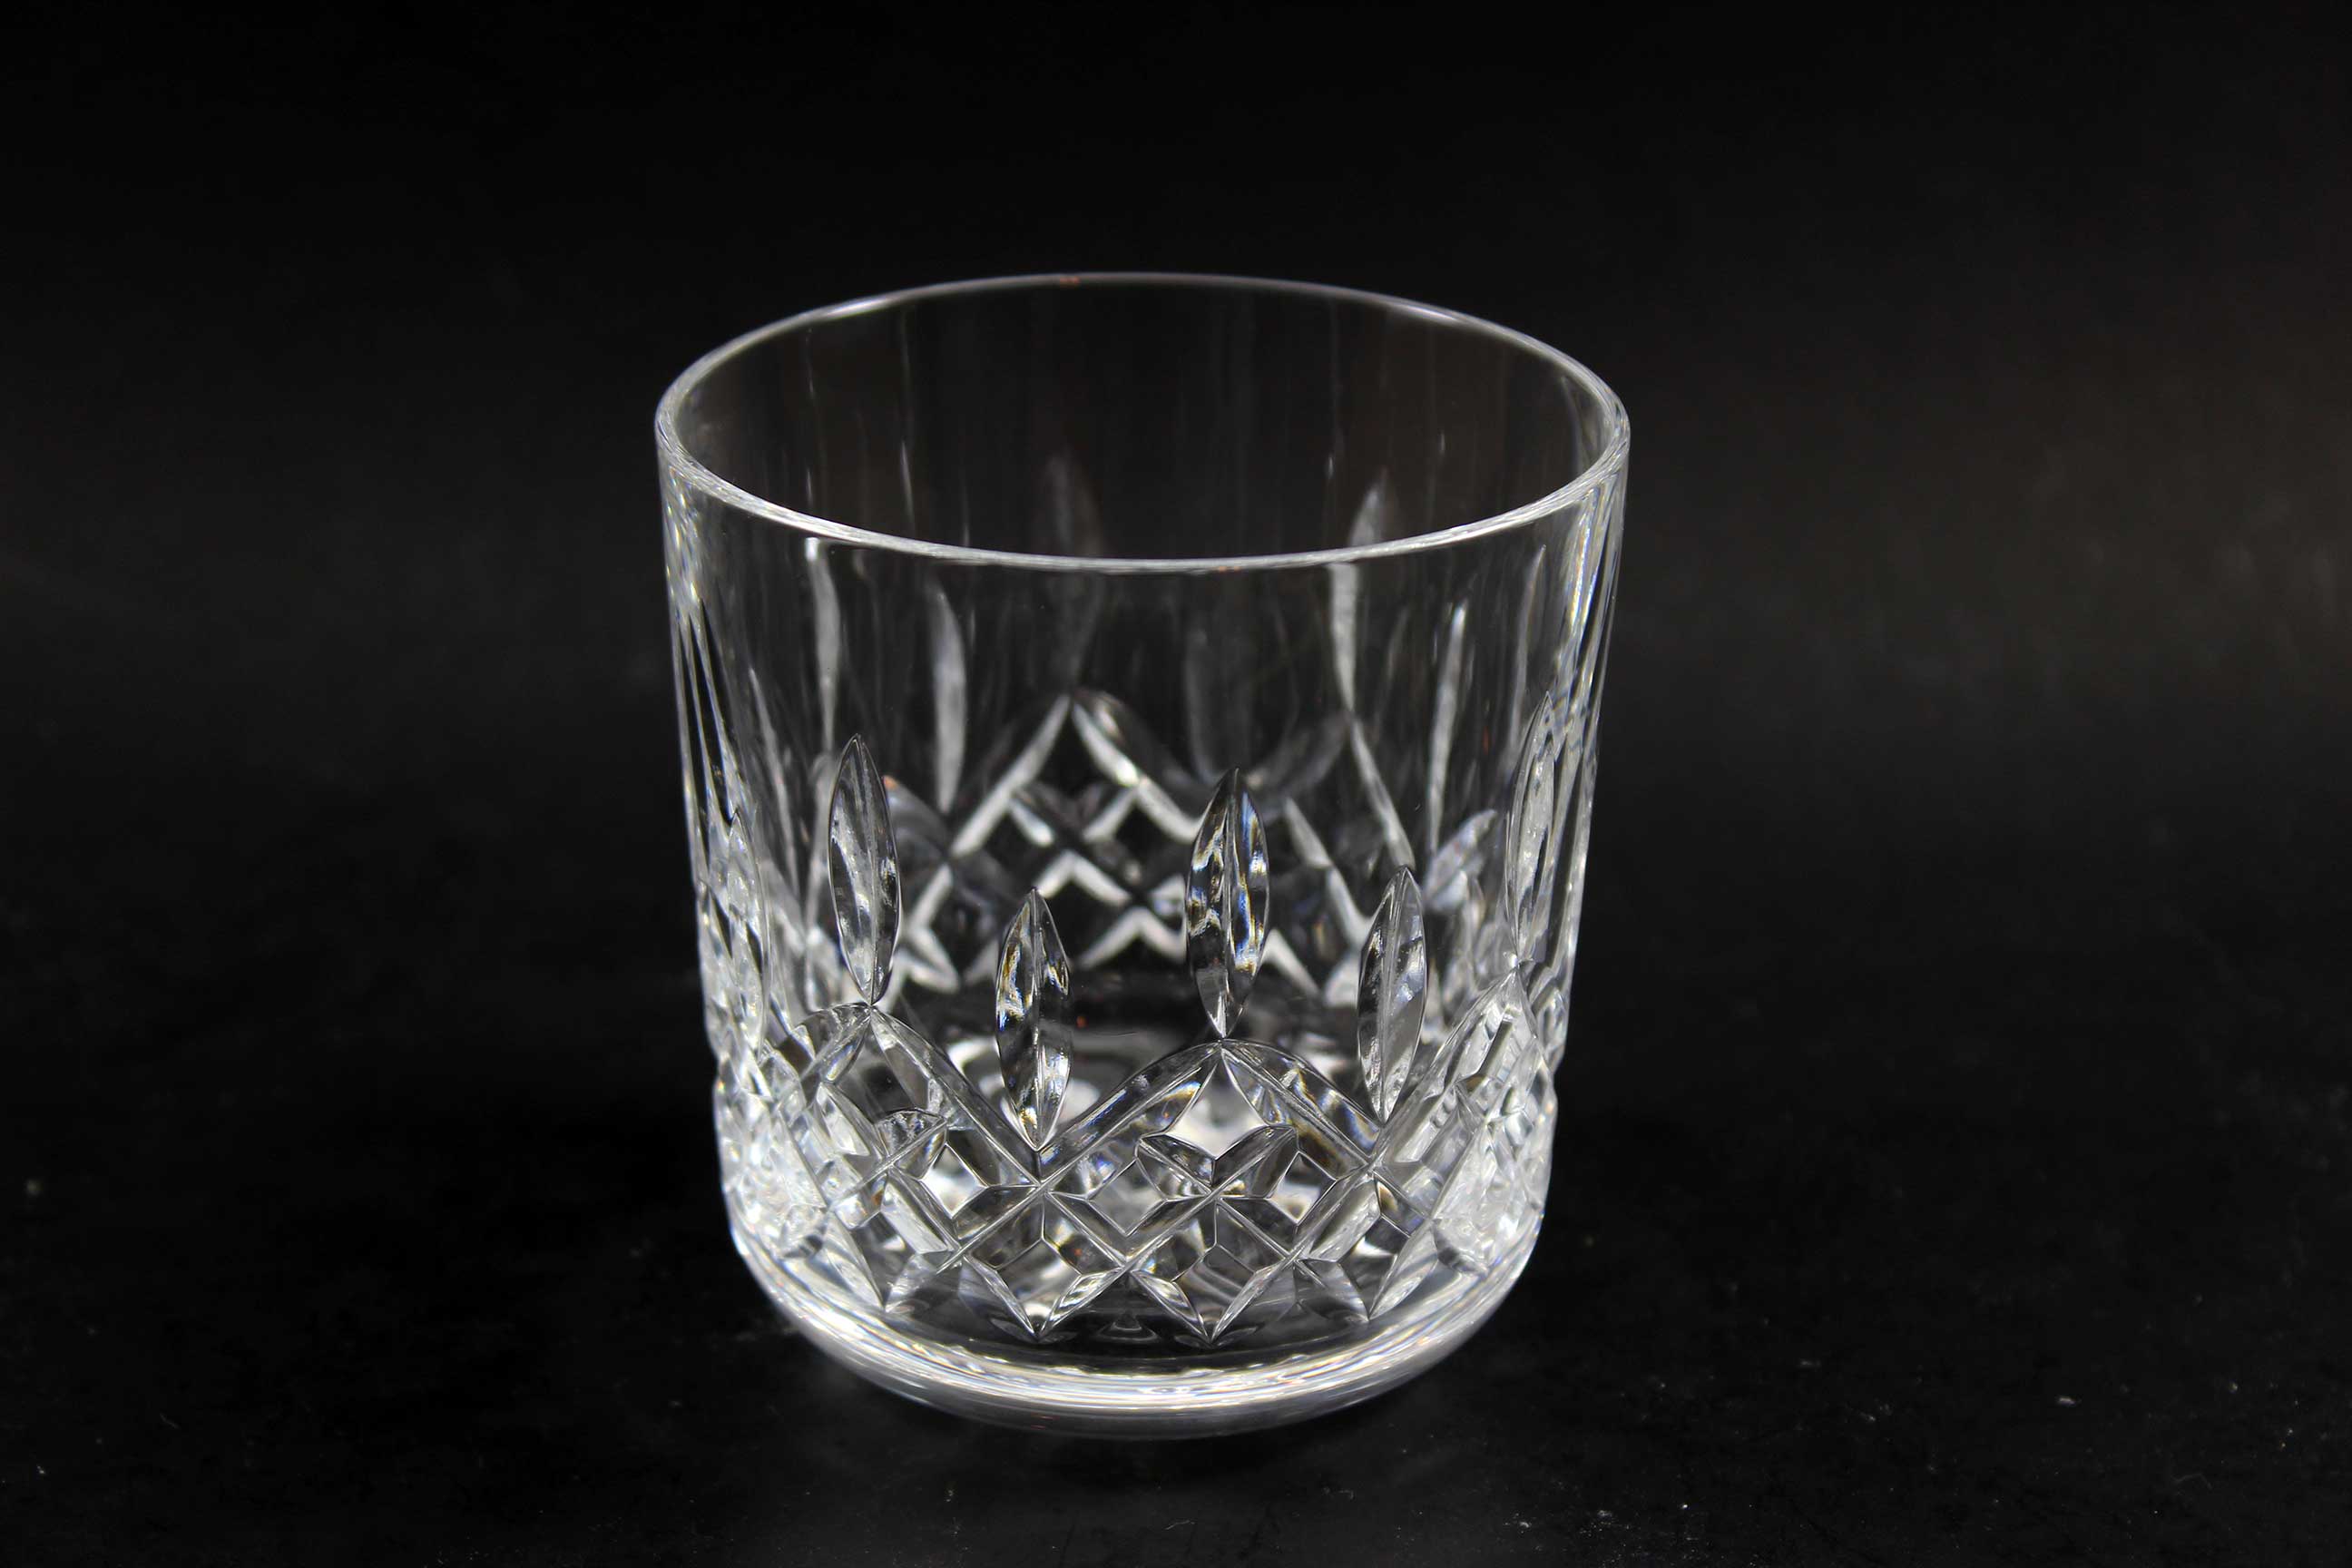 Waterford Crystal, Lismore Rocks Glasses